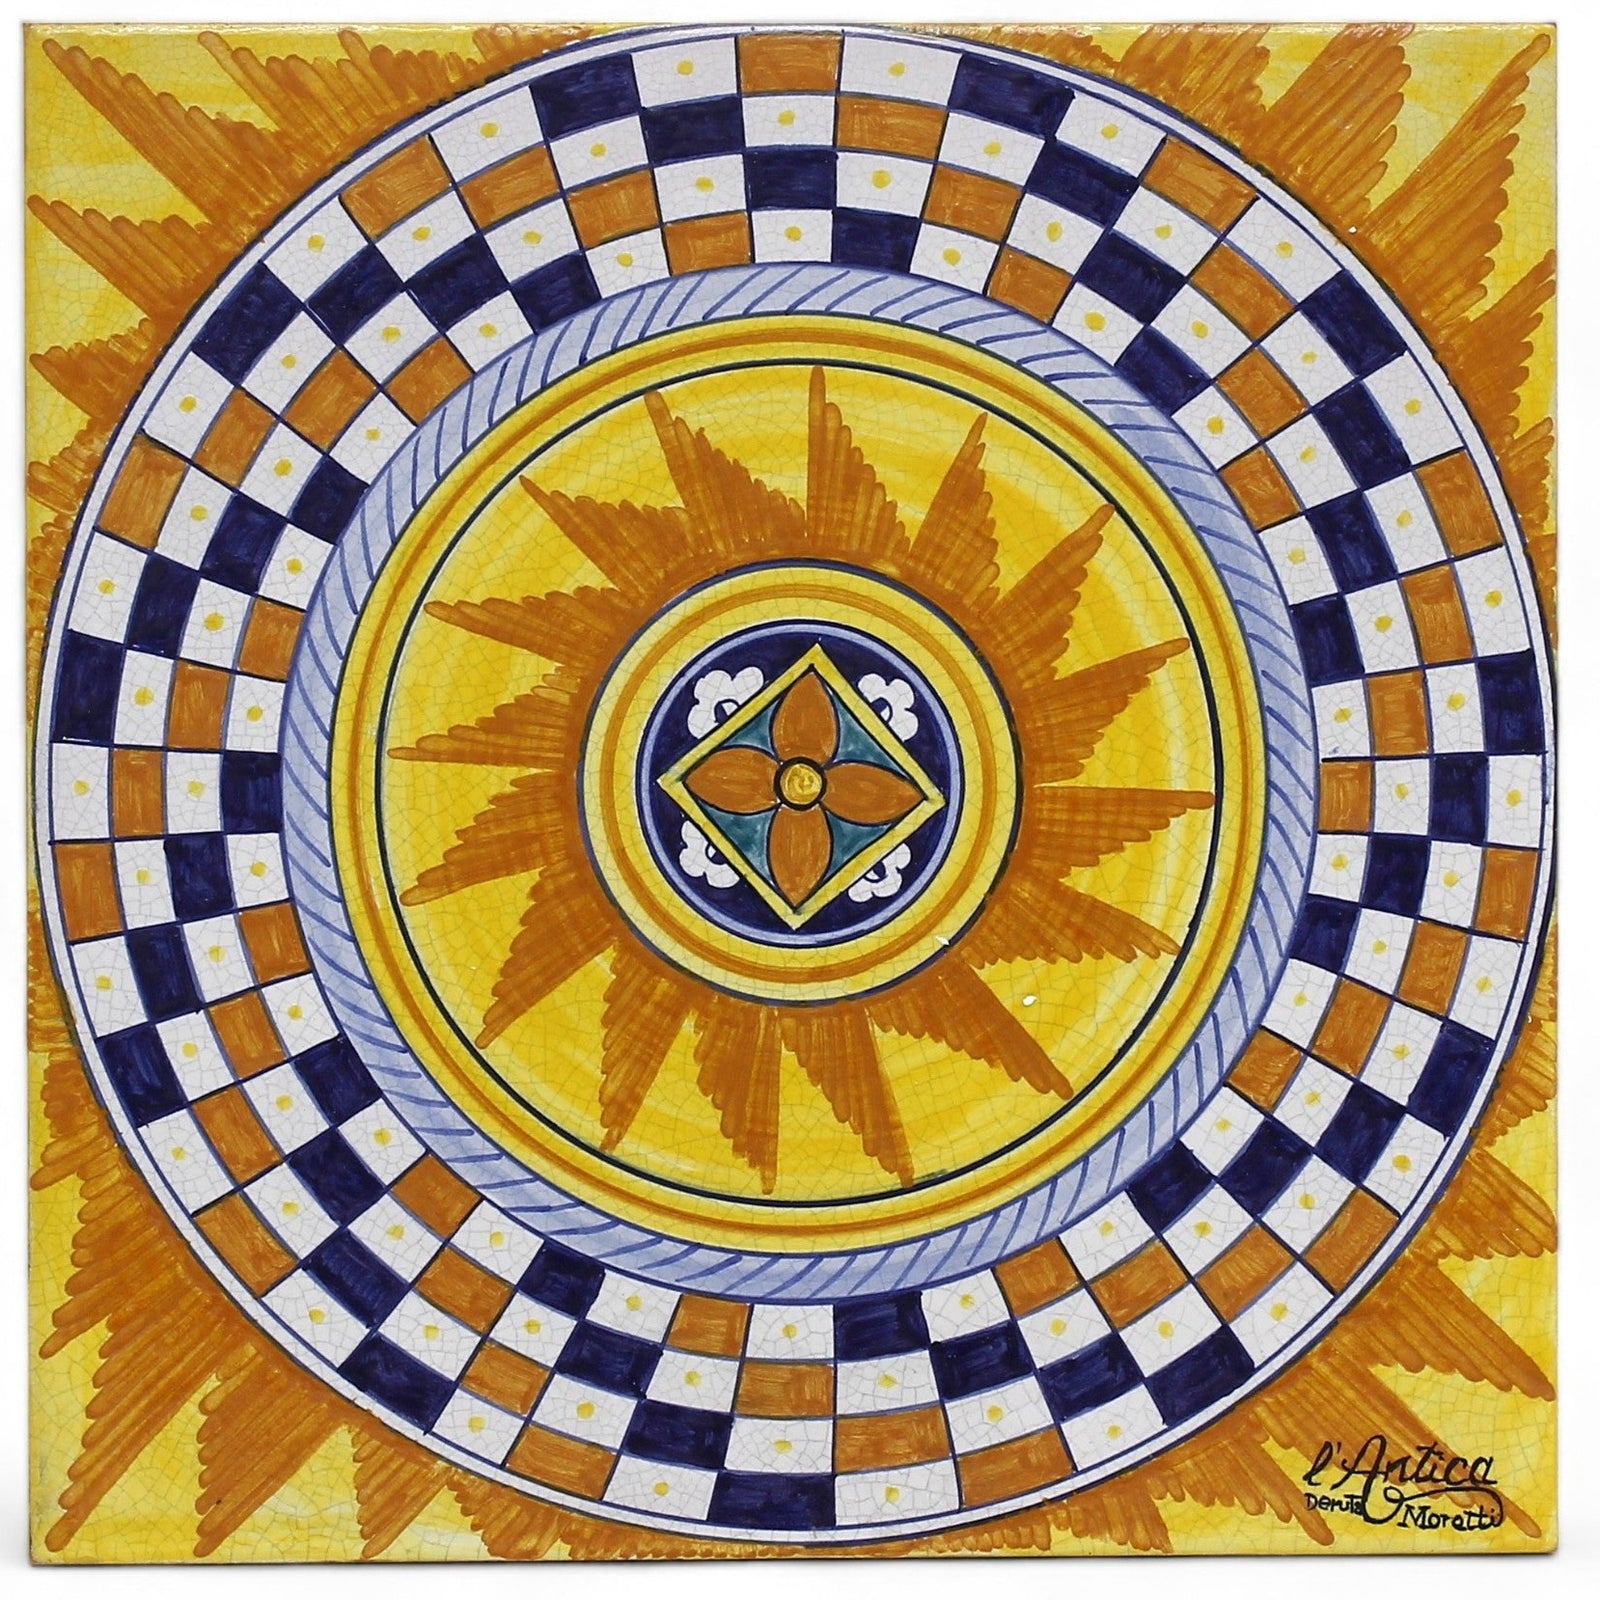 ANTICA DERUTA: Large Hand Painted Ceramic Authentic Deruta Tile